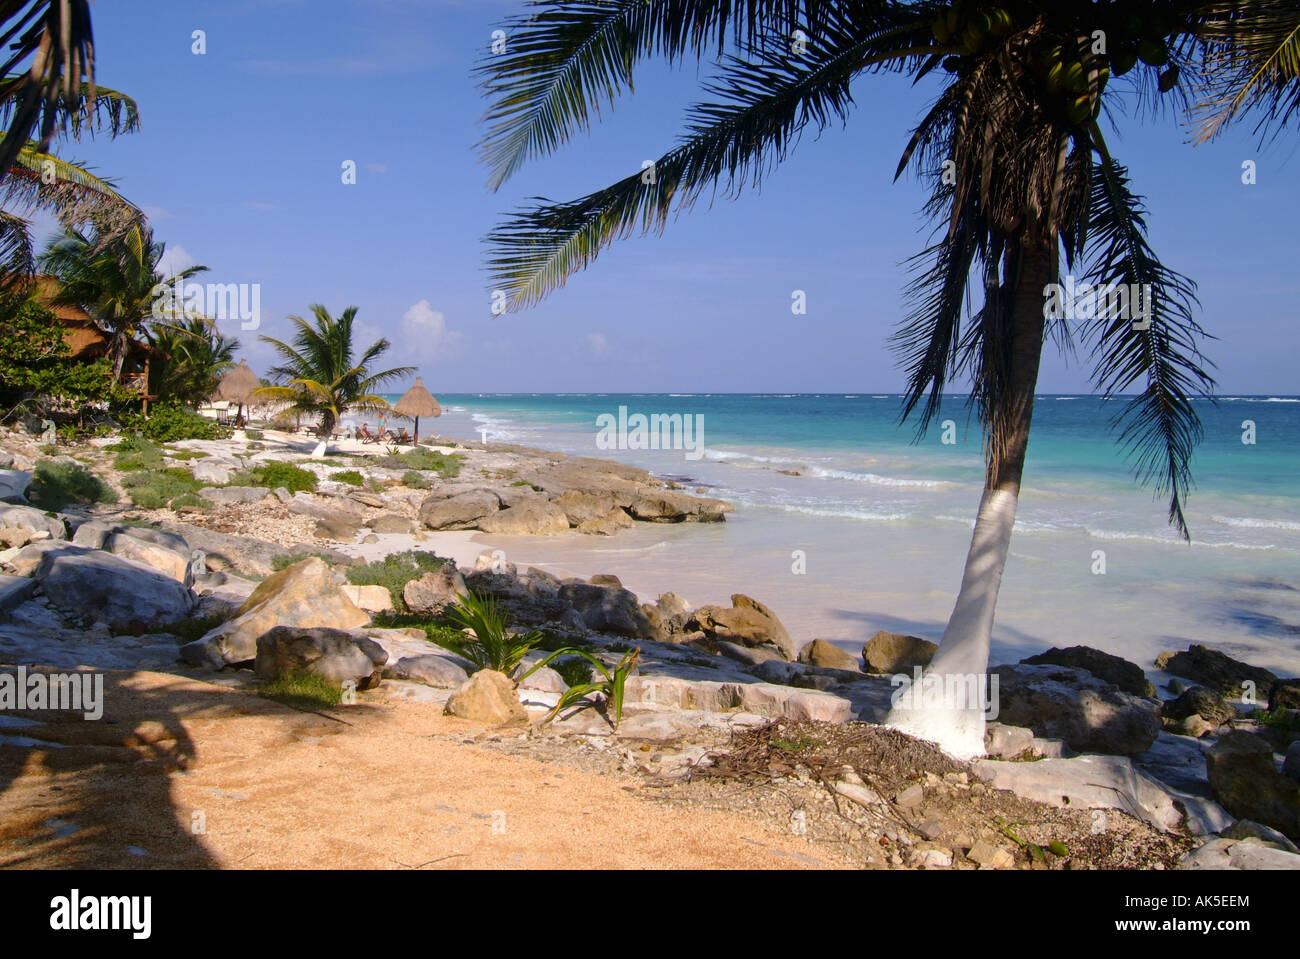 La plage de Tulum CARAÏBES MEXIQUE YUCATAN Banque D'Images